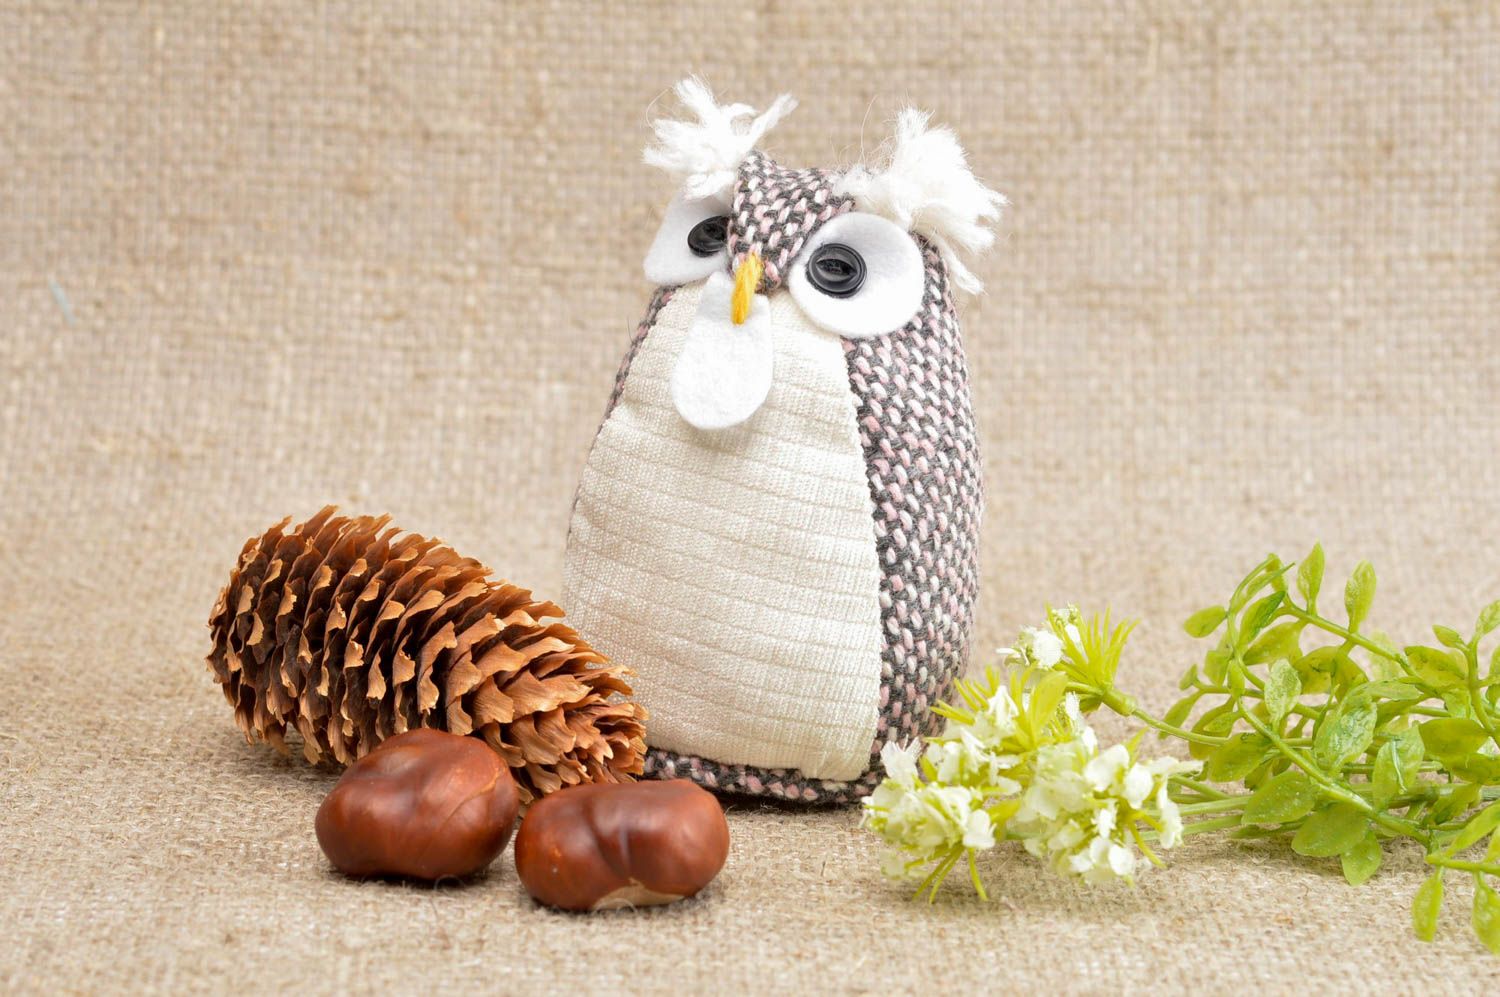 Handmade cute soft toy unusual designer owl toy stylish nursery decor ideas photo 1